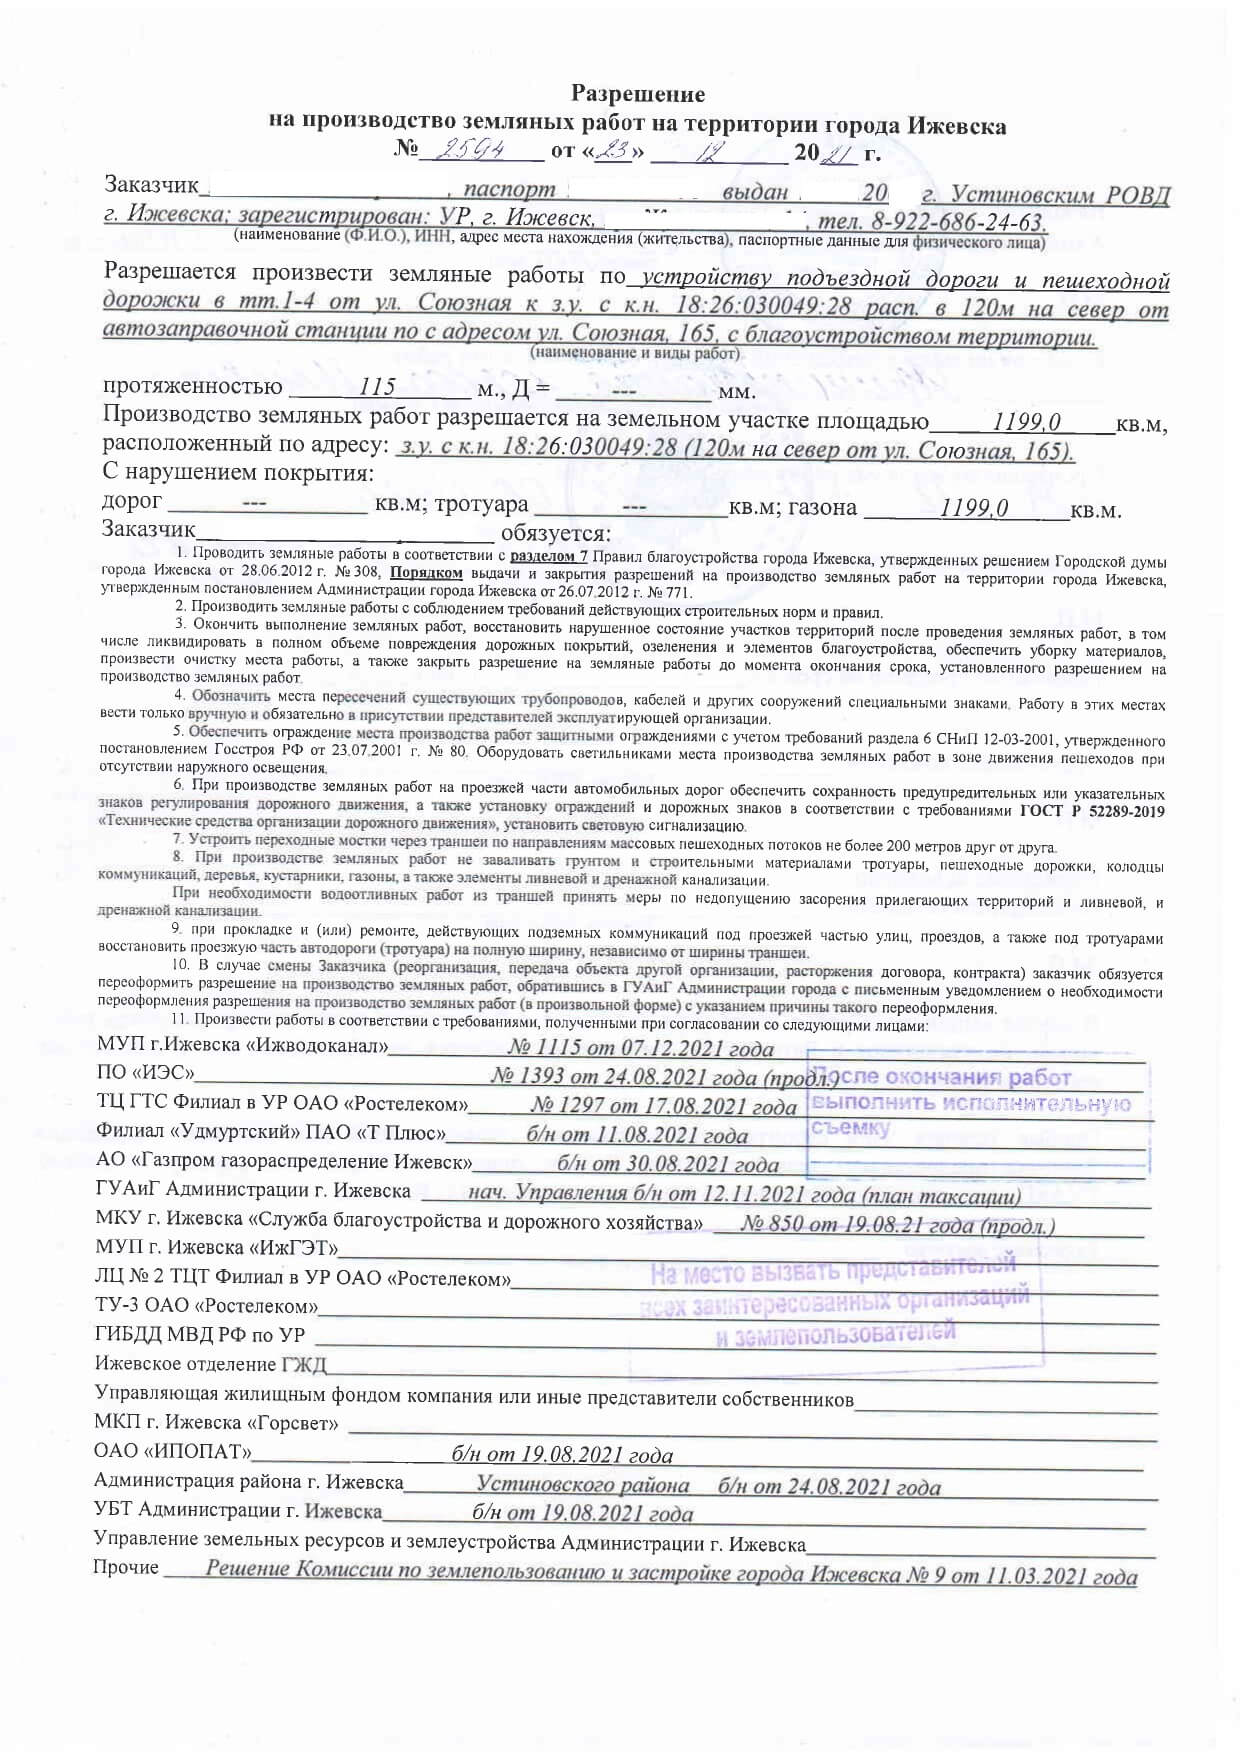 Ижевск. Разрешение на производство земляных работ